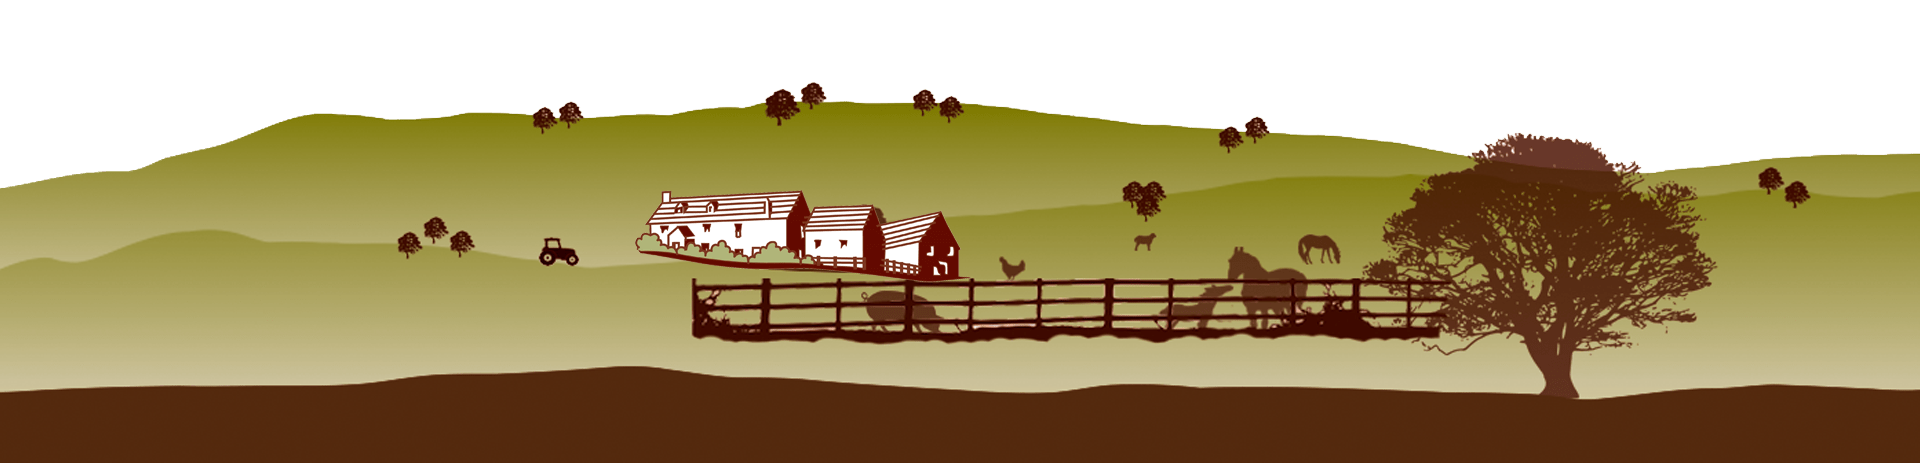 Greenmeadow Farm silhouette footer illustration